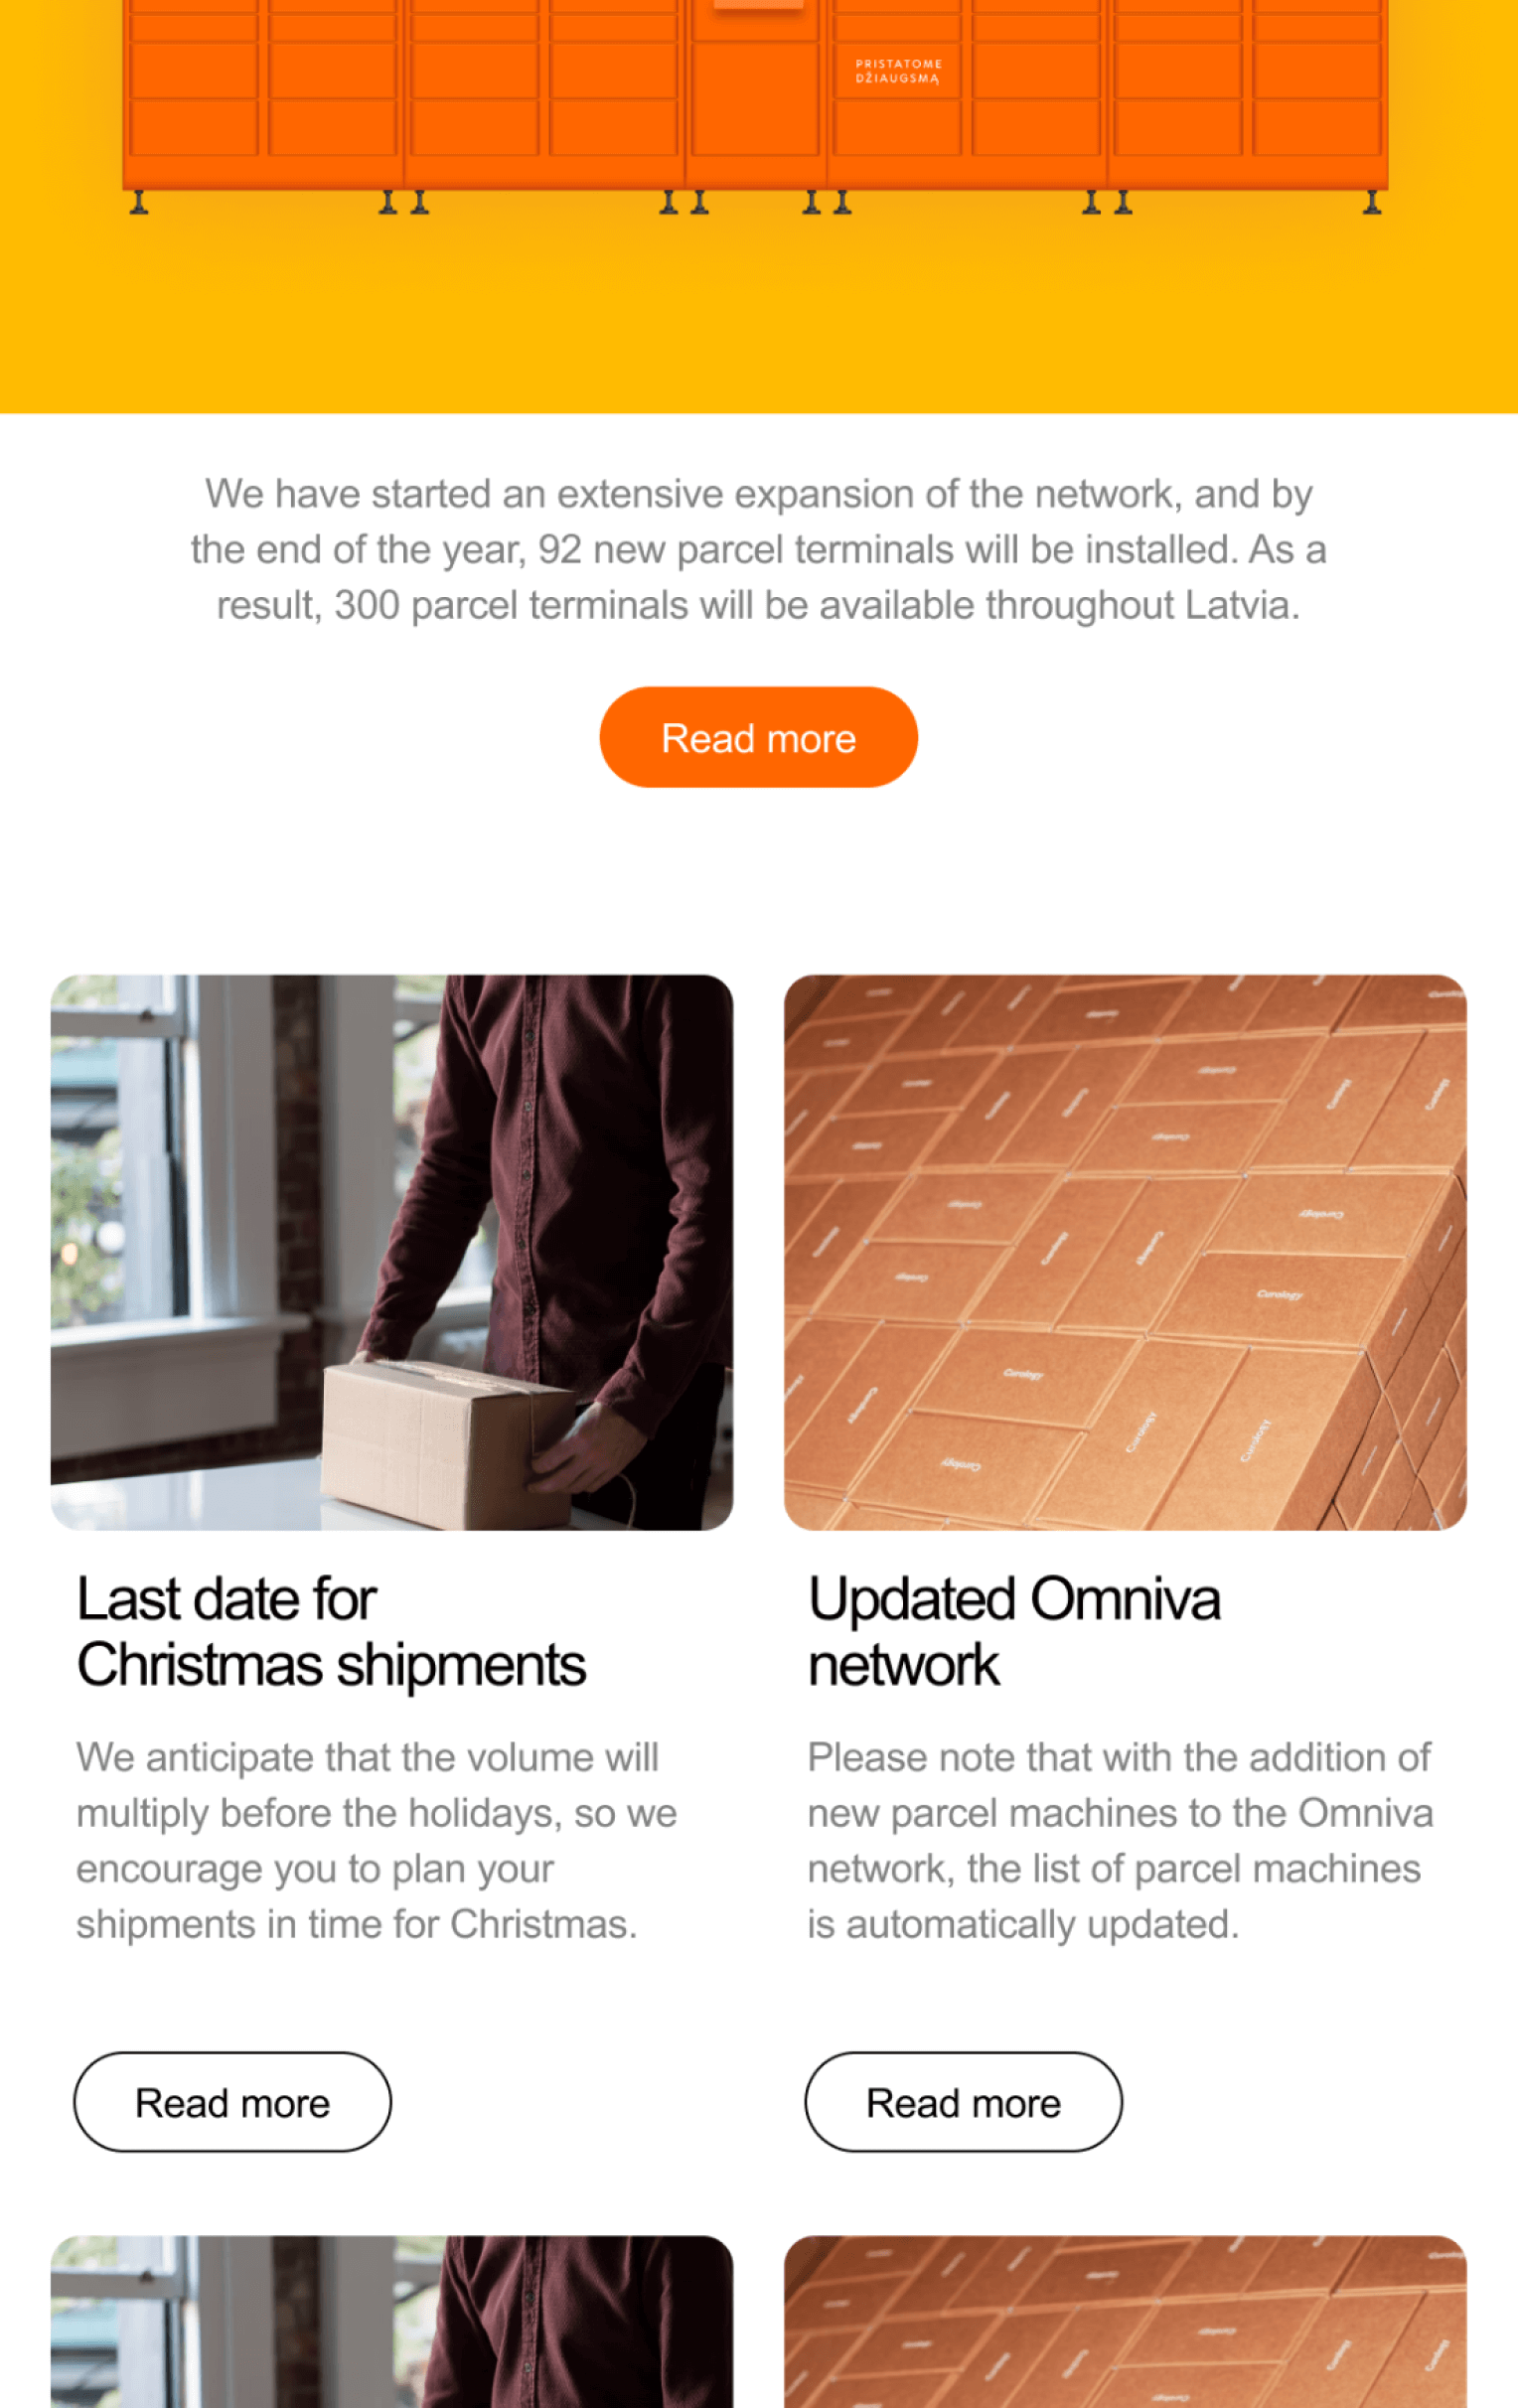 Omniva newsletter content